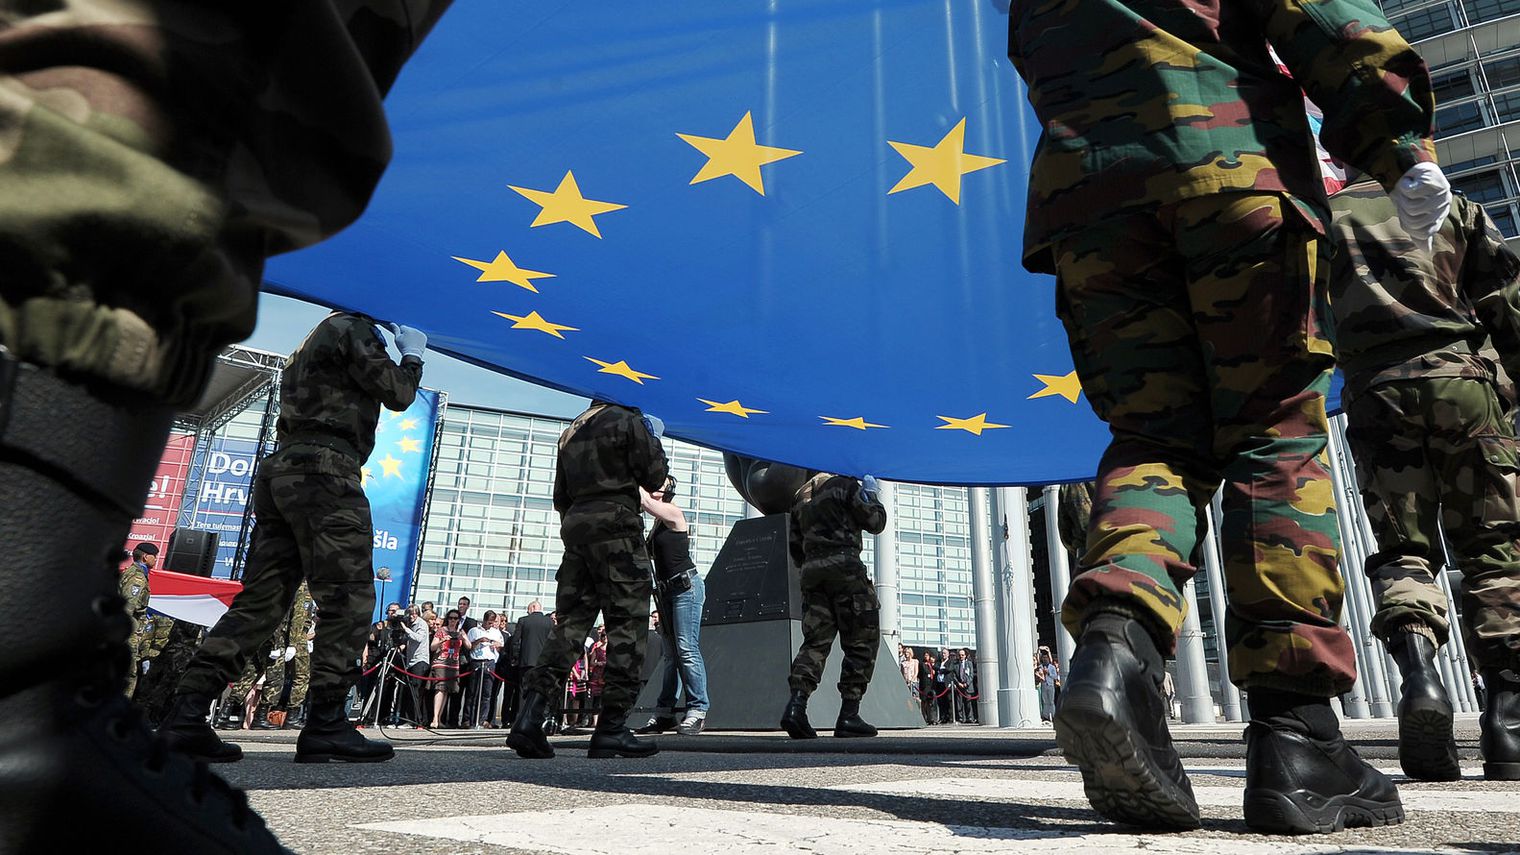 Dall’assenza di volontà alle spinte geopolitiche: l’esercito europeo alla prova delle tensioni. Intervista al Professor Matteo Frau